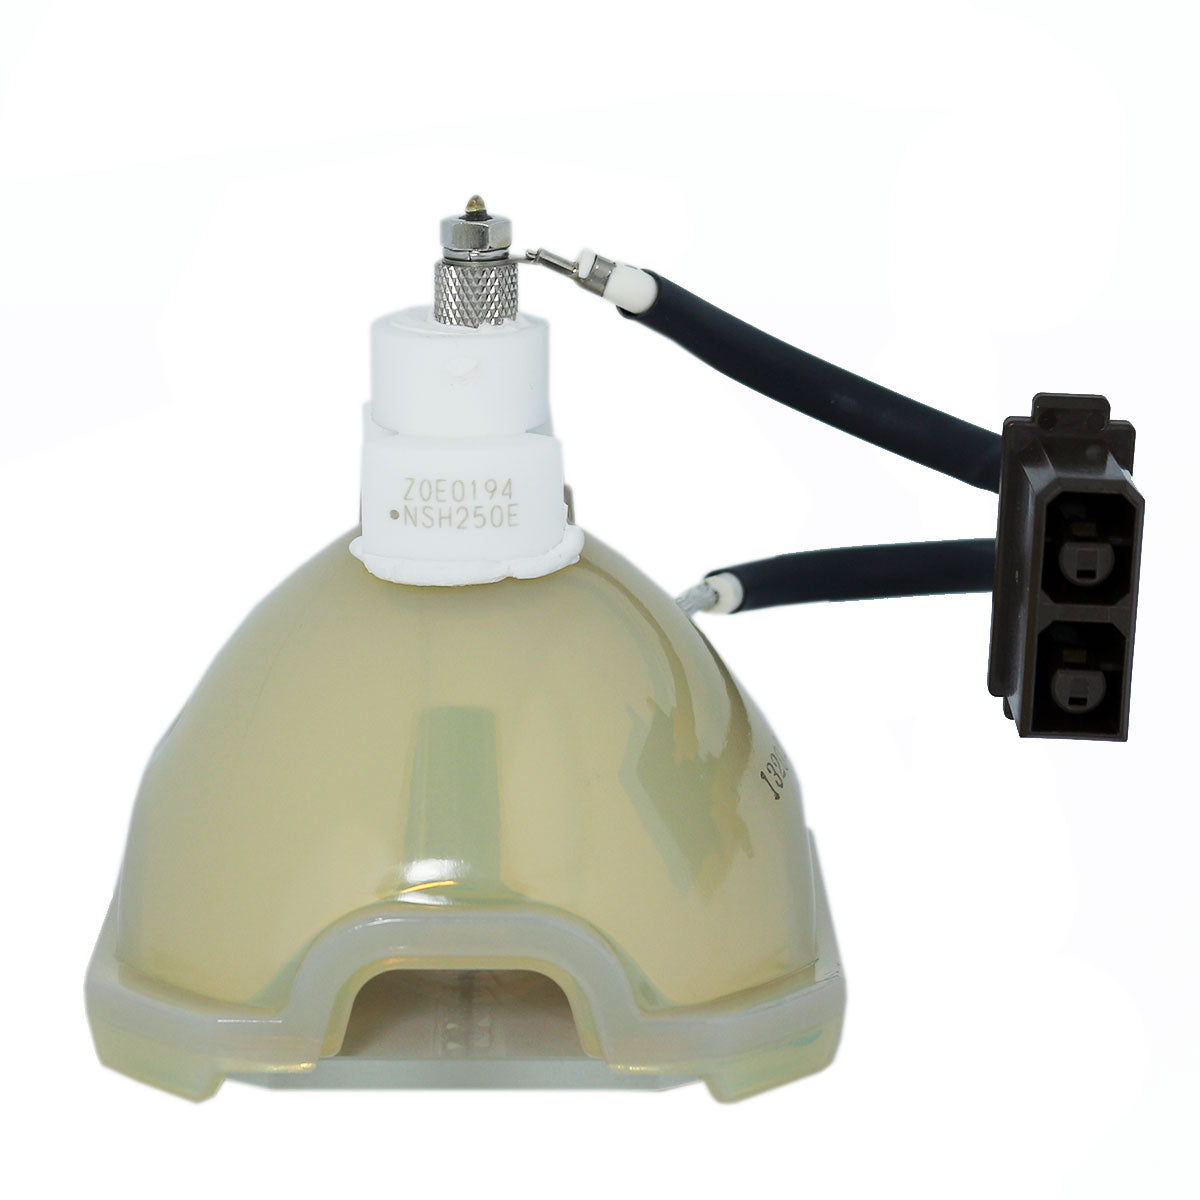 Sharp AN-K10LP/1 Ushio Projector Bare Lamp